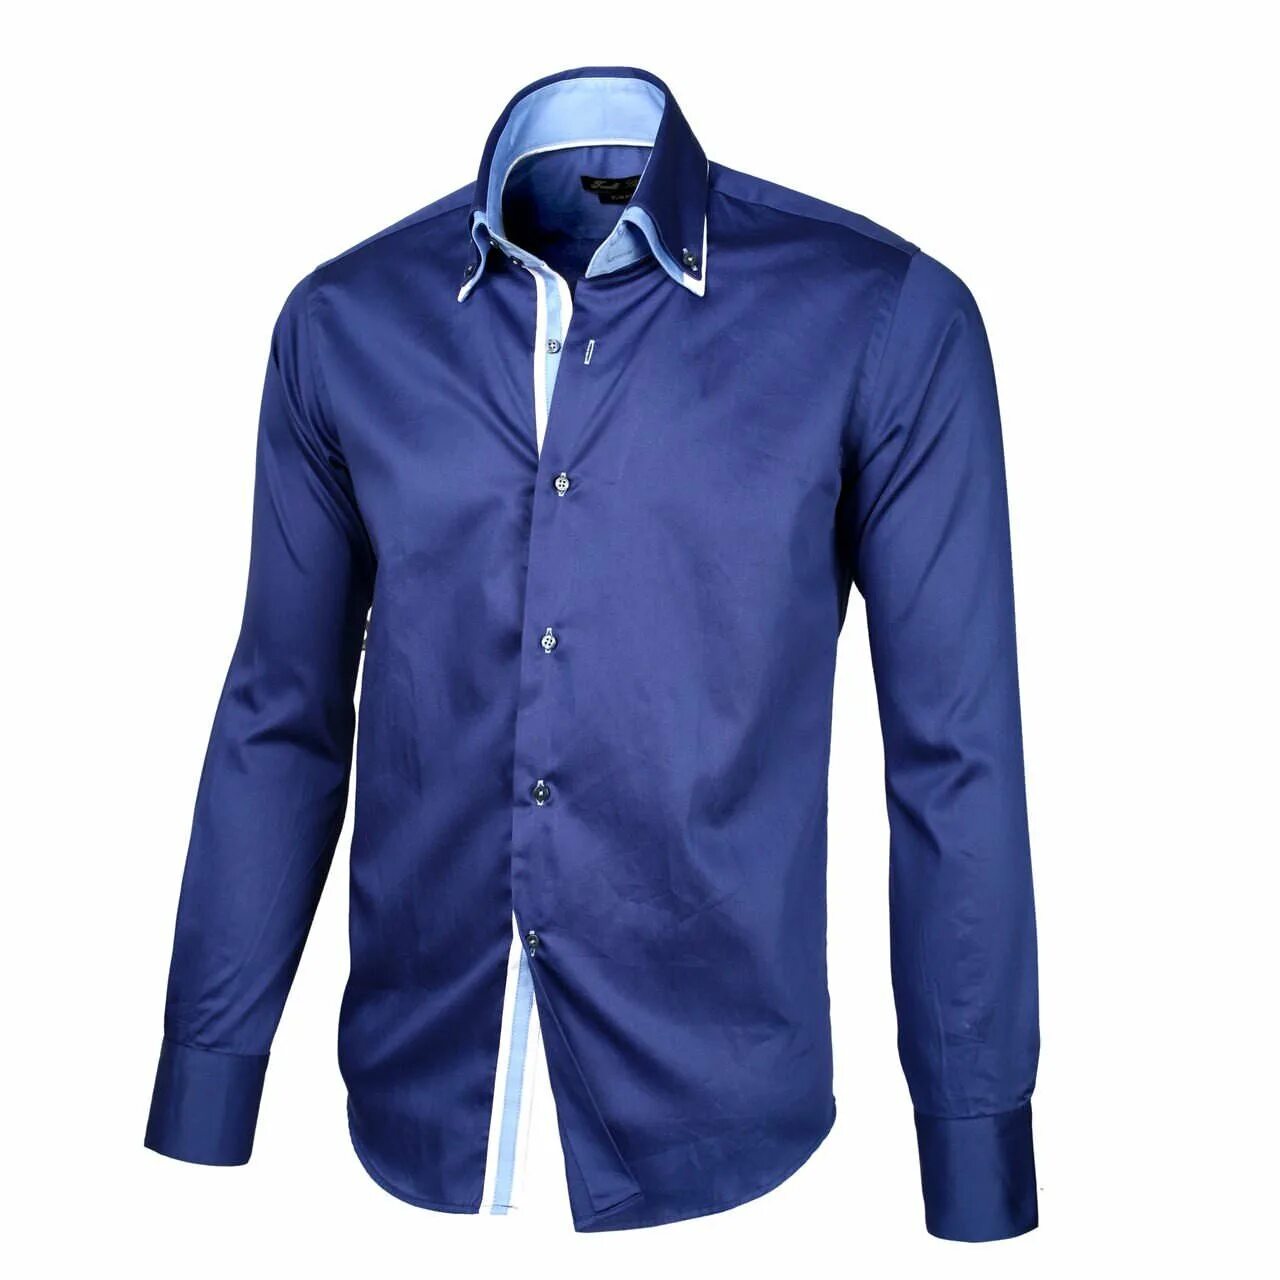 Купить рубашку новосибирск. Рубашка мужская Mavi m021190-80692. Синяя рубашка. Синяя рубашка мужская. Красивые рубашки для мужчин.